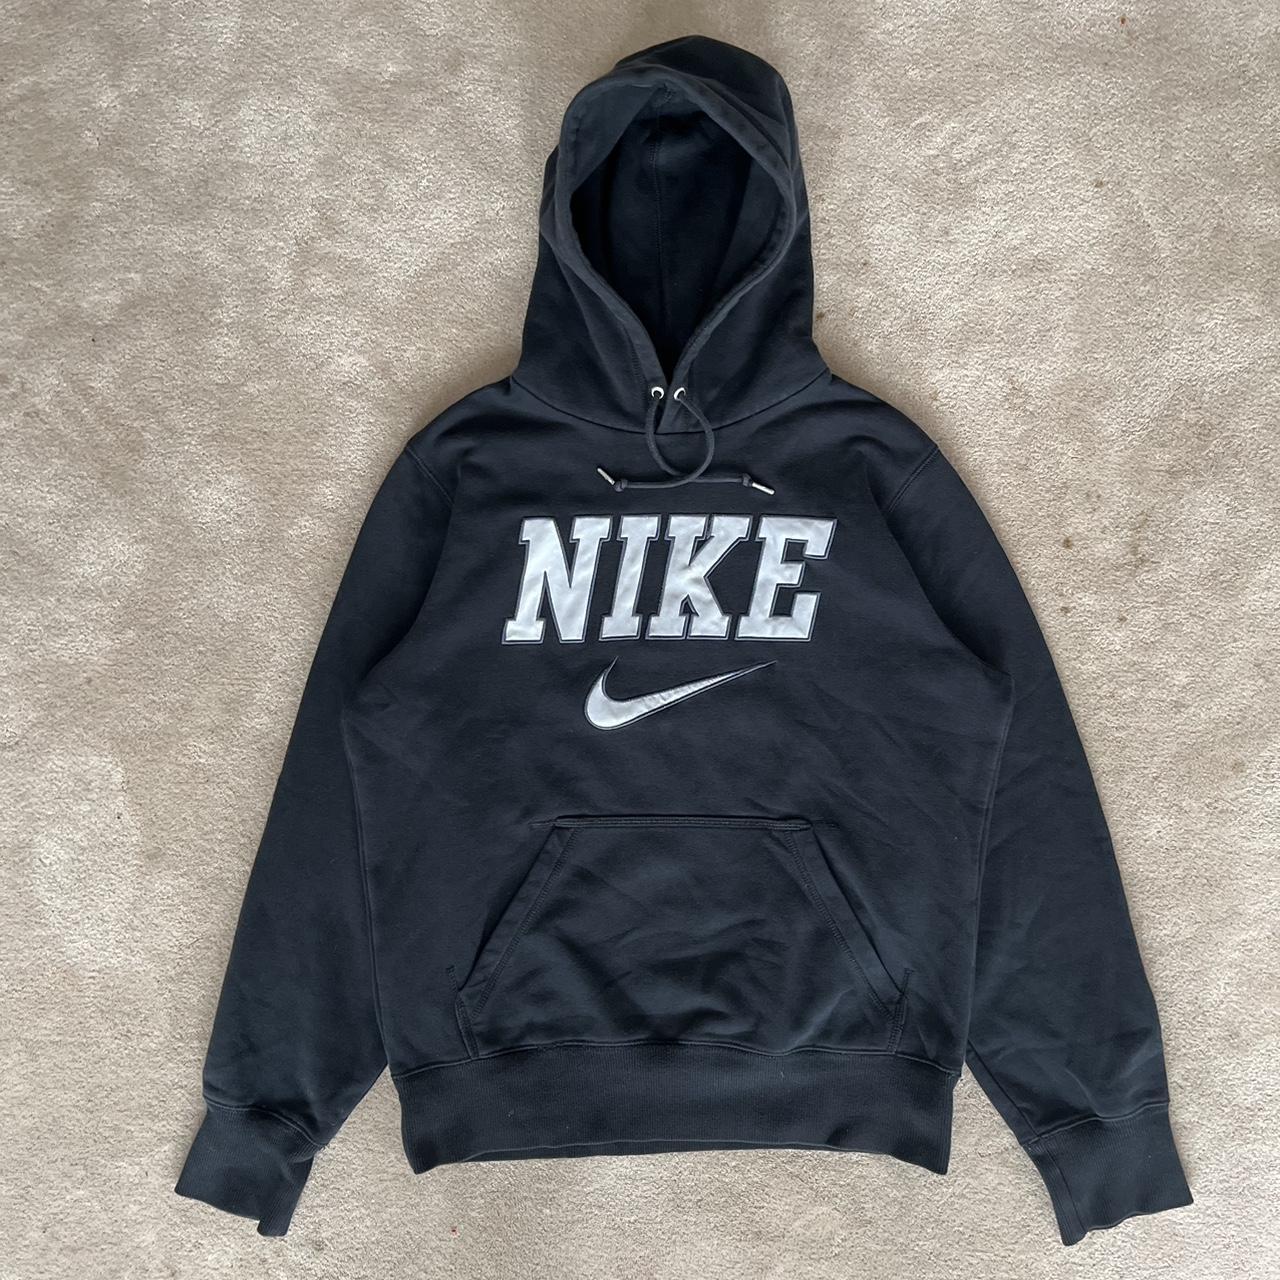 “Vintage Nike Spellout Hoodie Great hoodie in... - Depop